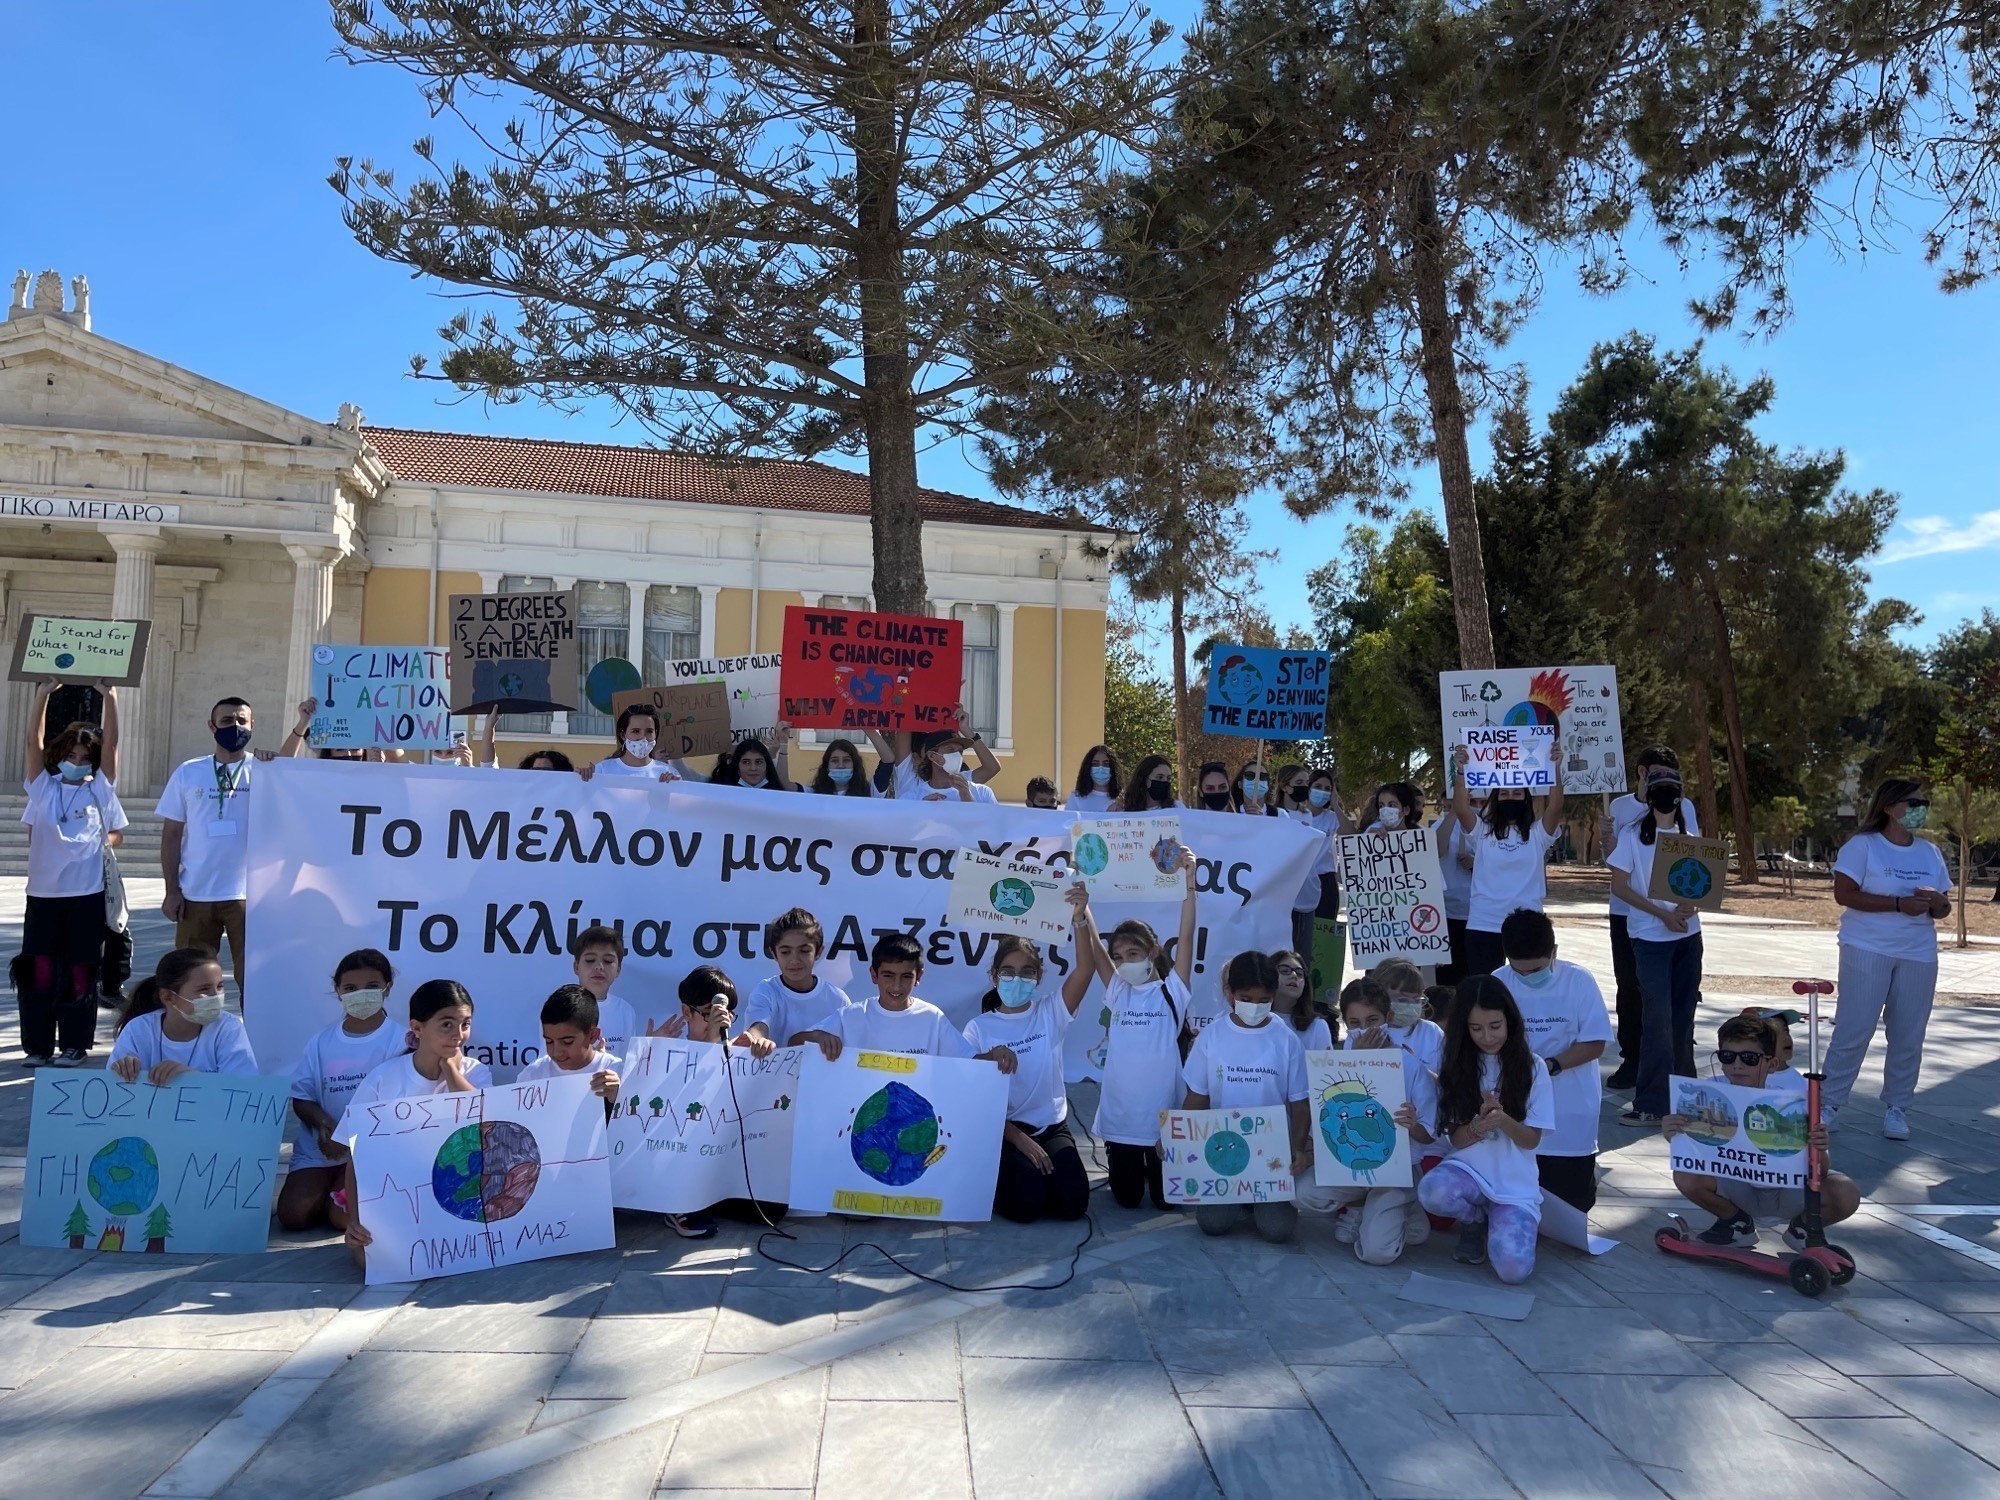 Οι νέοι της Κύπρου έχουν λόγο και διεκδικούν το μέλλον τους σε έναν υγιή πλανήτη